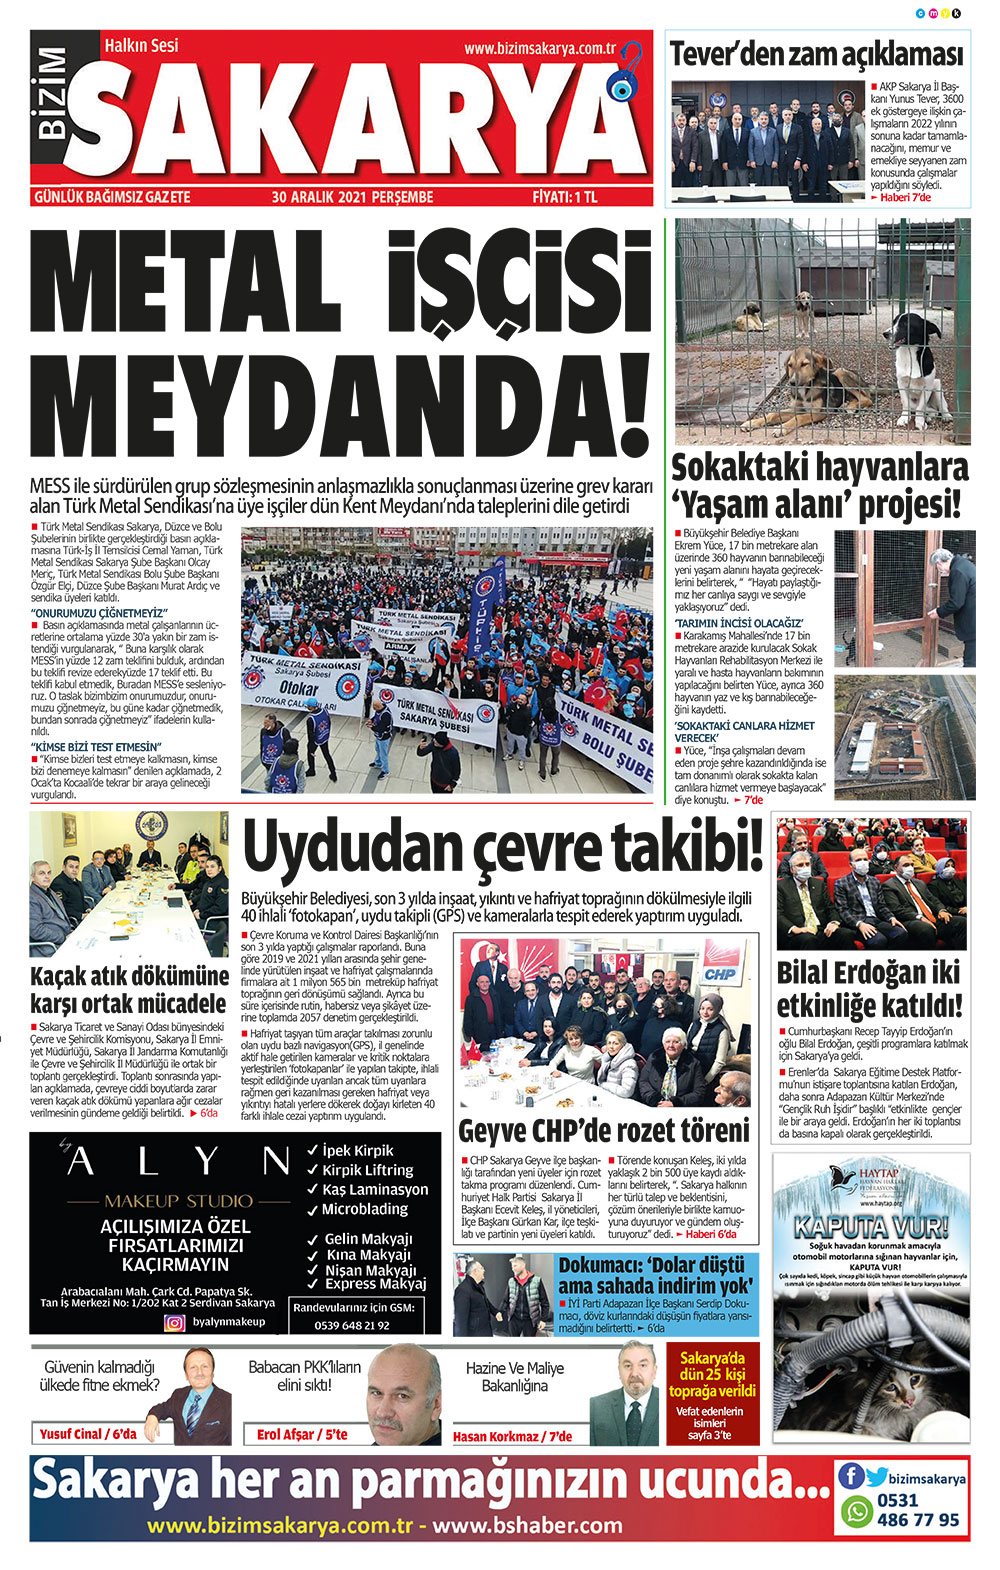 Bizim Sakarya Gazetesi - 30.12.2021 Manşeti